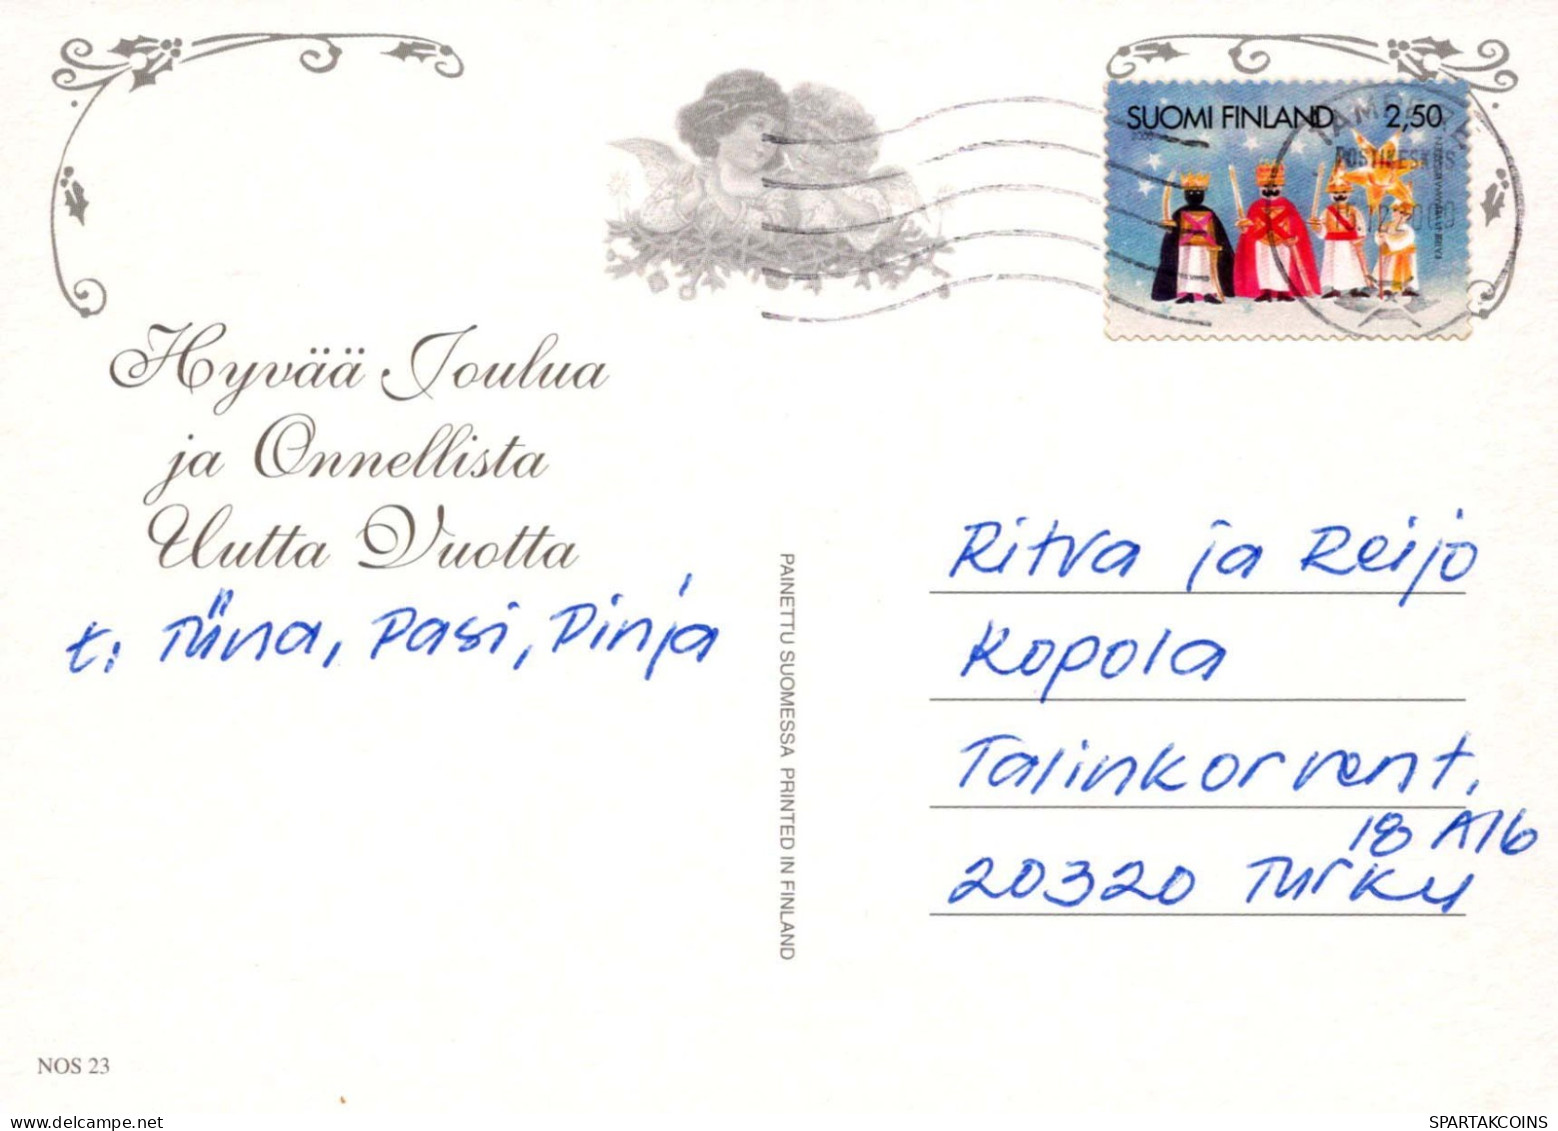 Feliz Año Navidad CAMPANA Vintage Tarjeta Postal CPSM #PAT213.ES - New Year